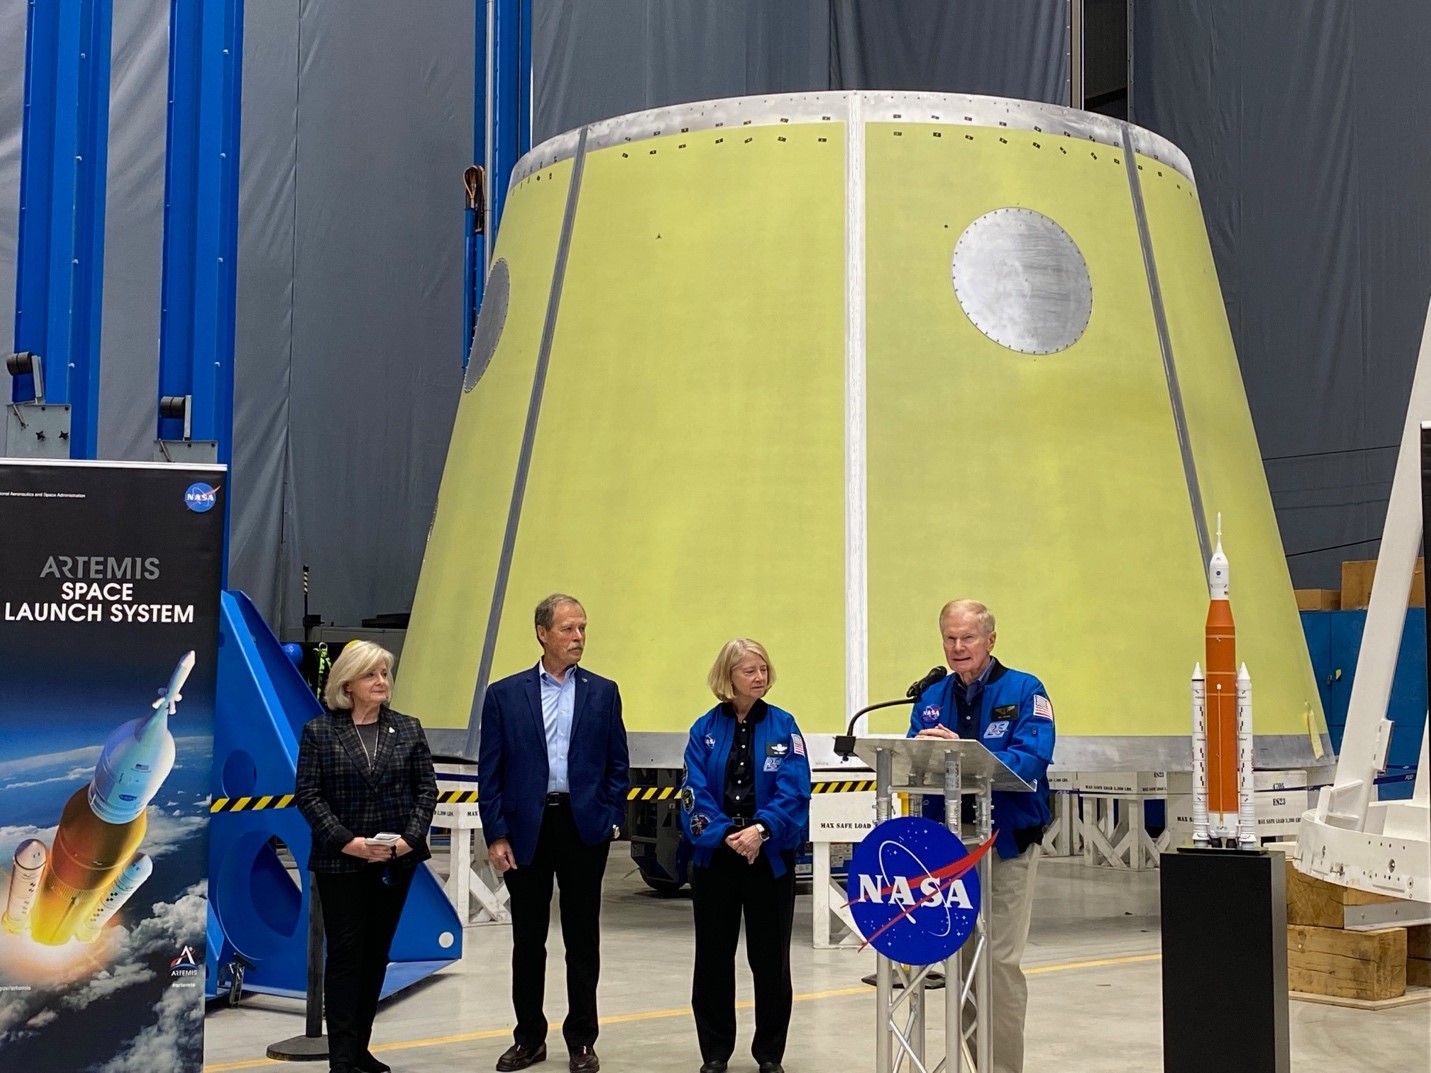 From left, Jody Singer, Robert “Hoot” Gibson, Pam Melroy; and NASA Administrator Sen. Bill Nelson address the media.